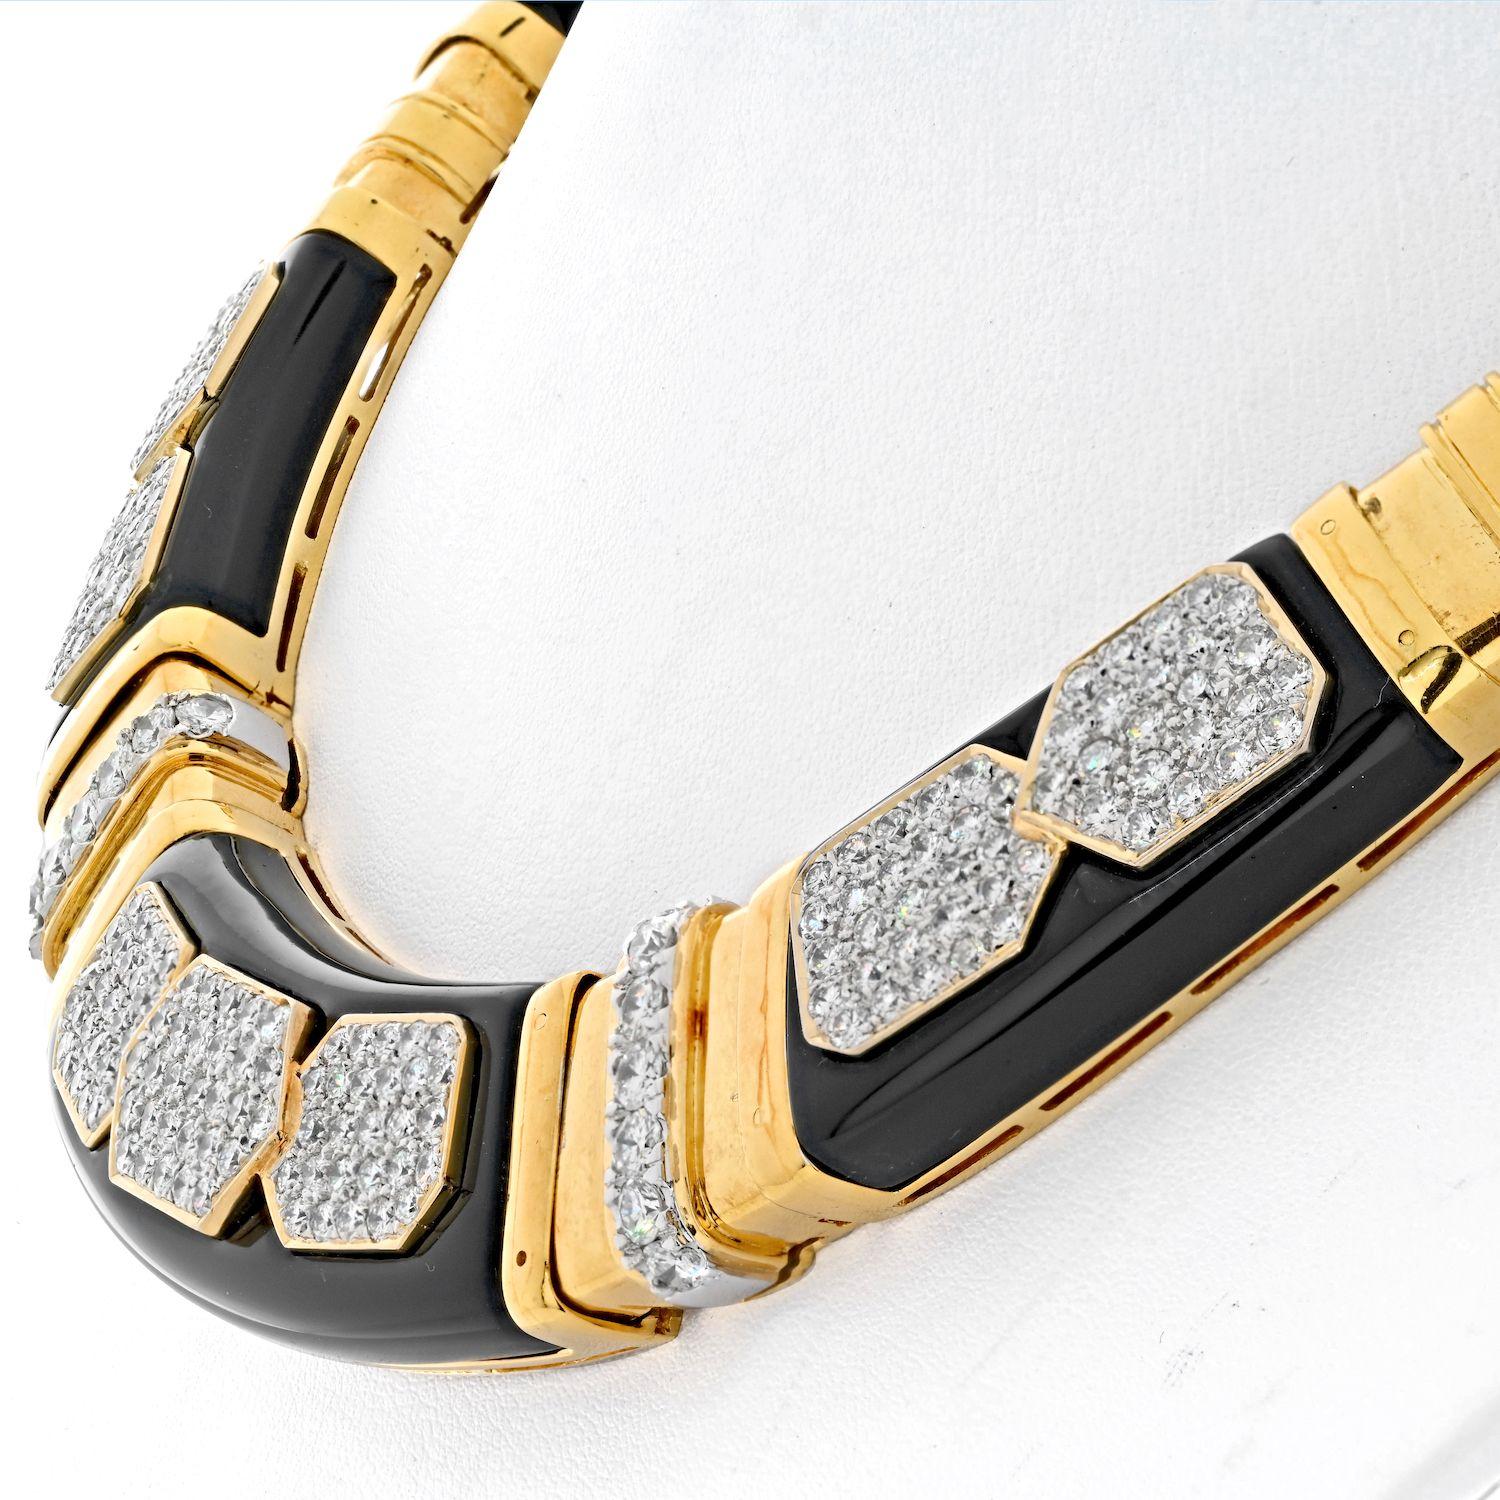 Collier à maillons en or jaune 18K avec diamants et onyx. Le collier est composé de maillons segmentés en diamant et en or. Incrusté d'onyx - opaque de couleur noire et d'un excellent poli. Avec sept plaques de diamants en pavé d'or blanc. Accentué